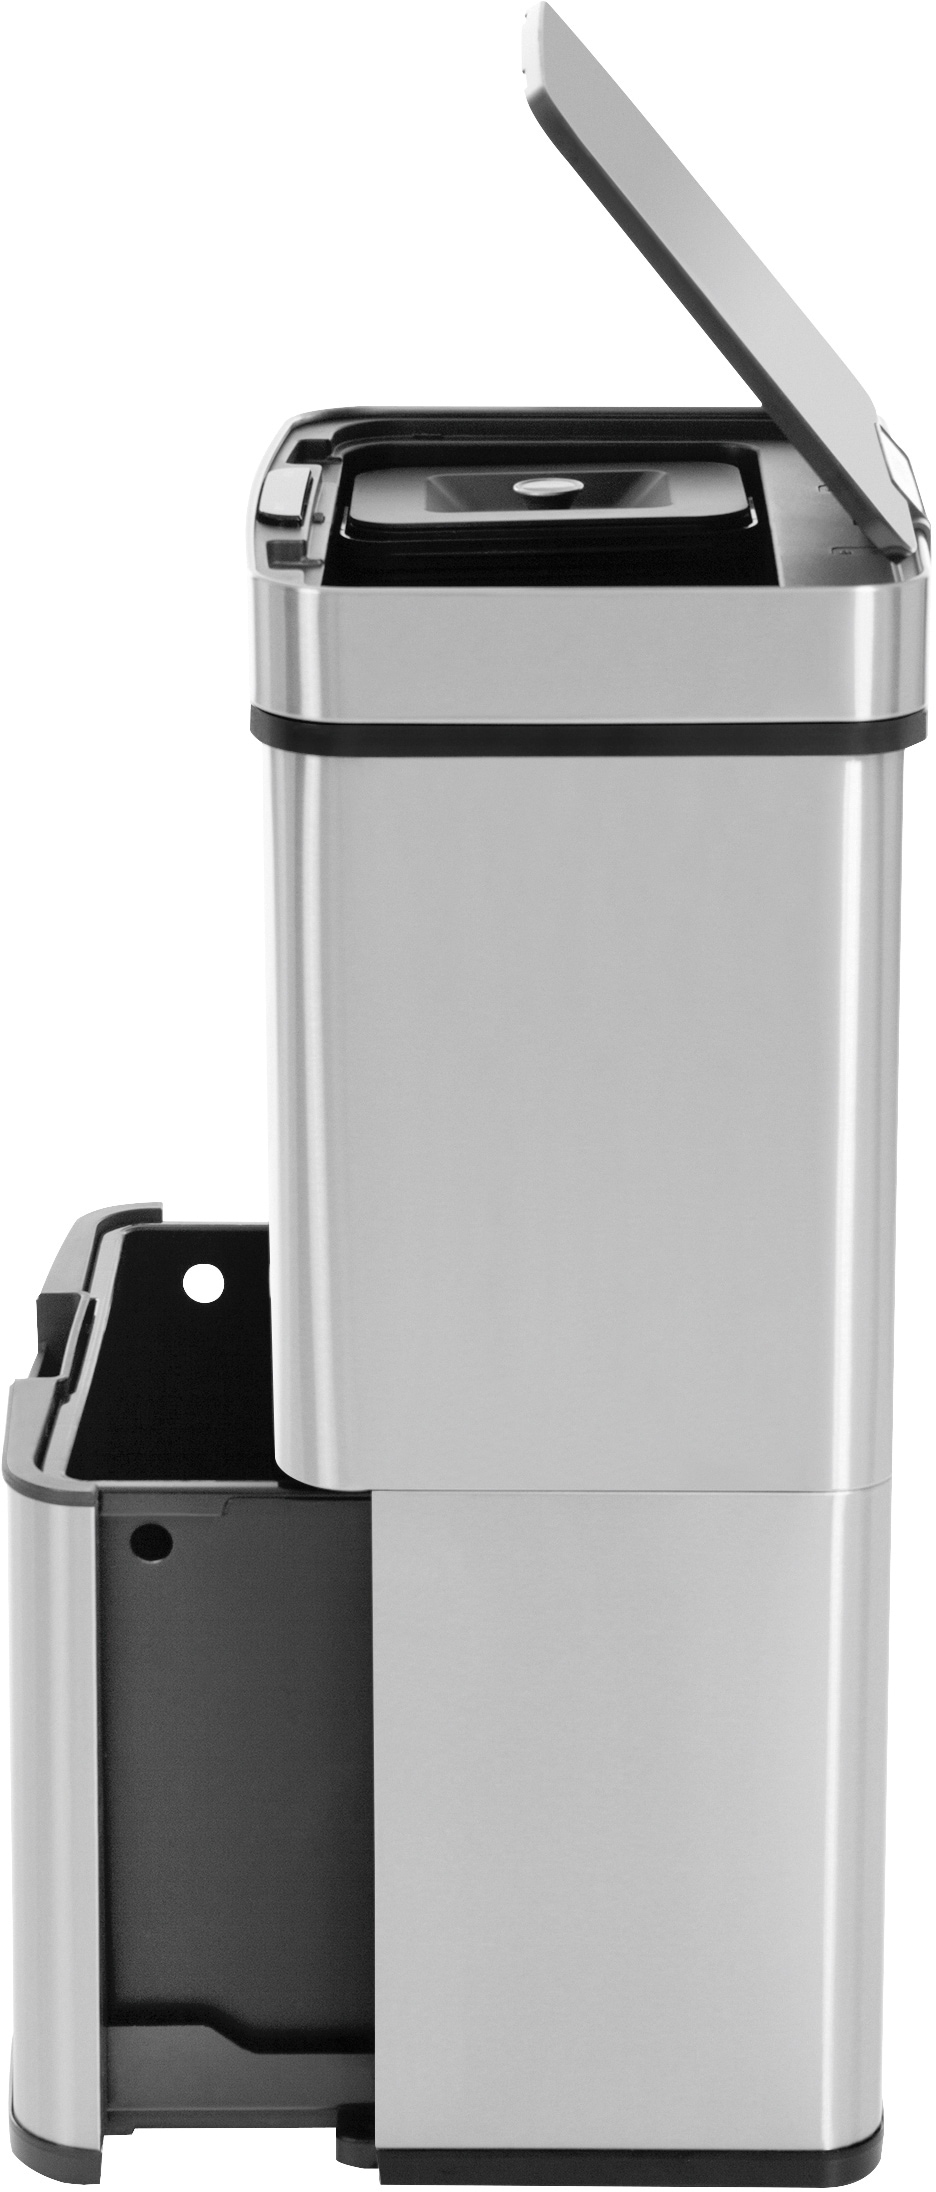 Hailo Mülltrennsystem »Öko Vario XL«, 3 Behälter, 54 Liter, Edelstahl, Kunststoff Inneneimer, Sensortechnik